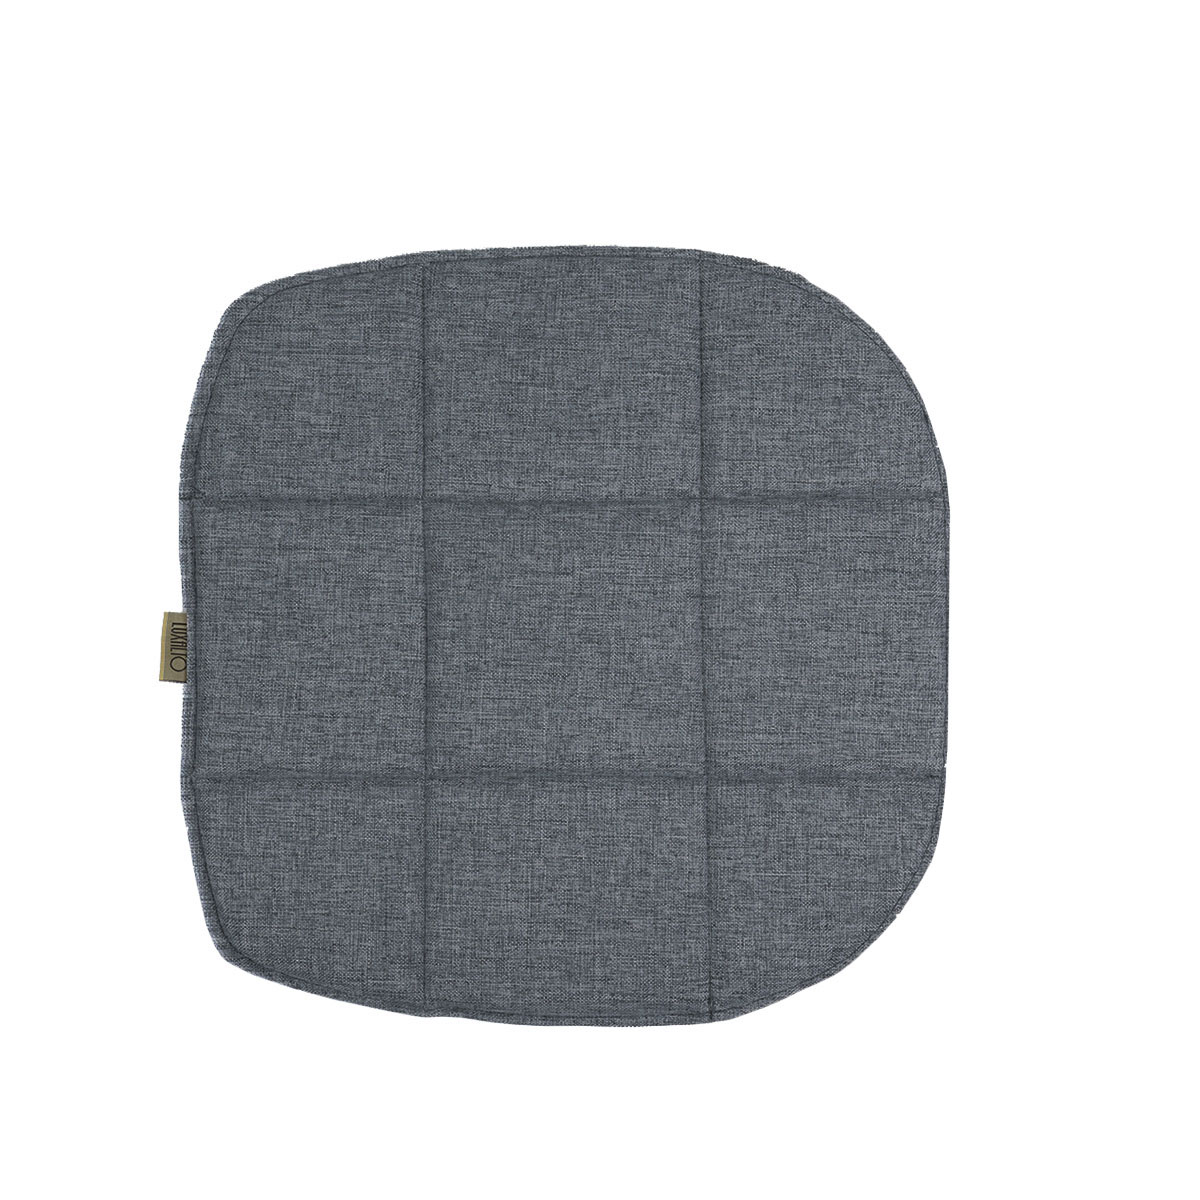 Подушка на стул LuxAlto для модели Eames/Aspen, рогожка графитово-серый (Laguna 997), 2 шт.